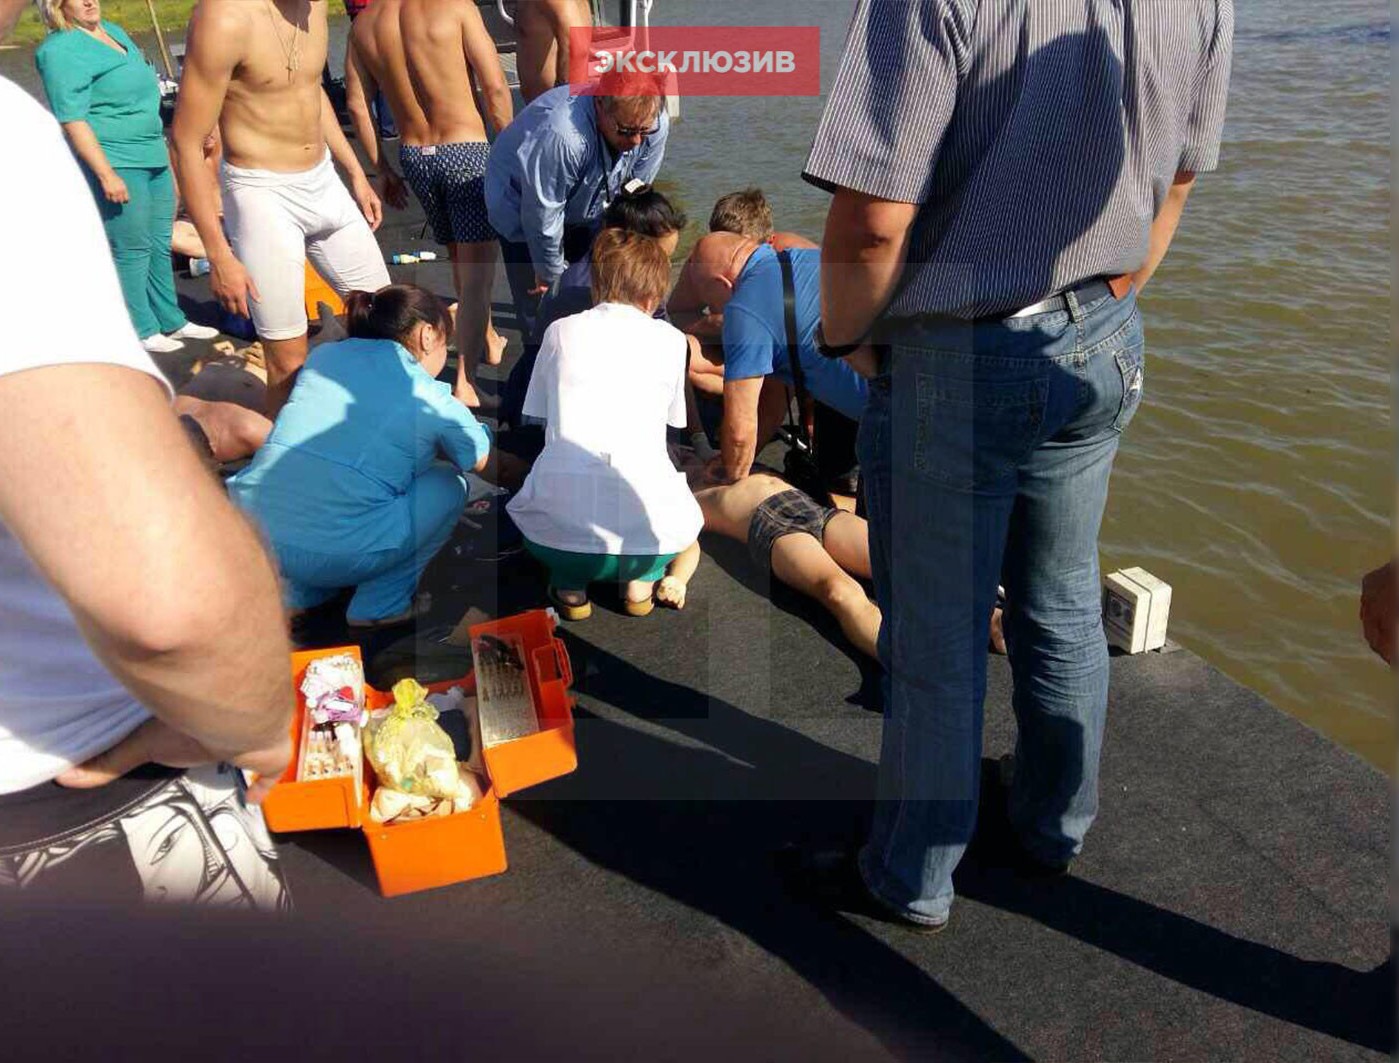 Новости утонувших мальчиков. Мальчик спасатель. В Батьках утонул мужчина. ЧП В Иркутске на воде.